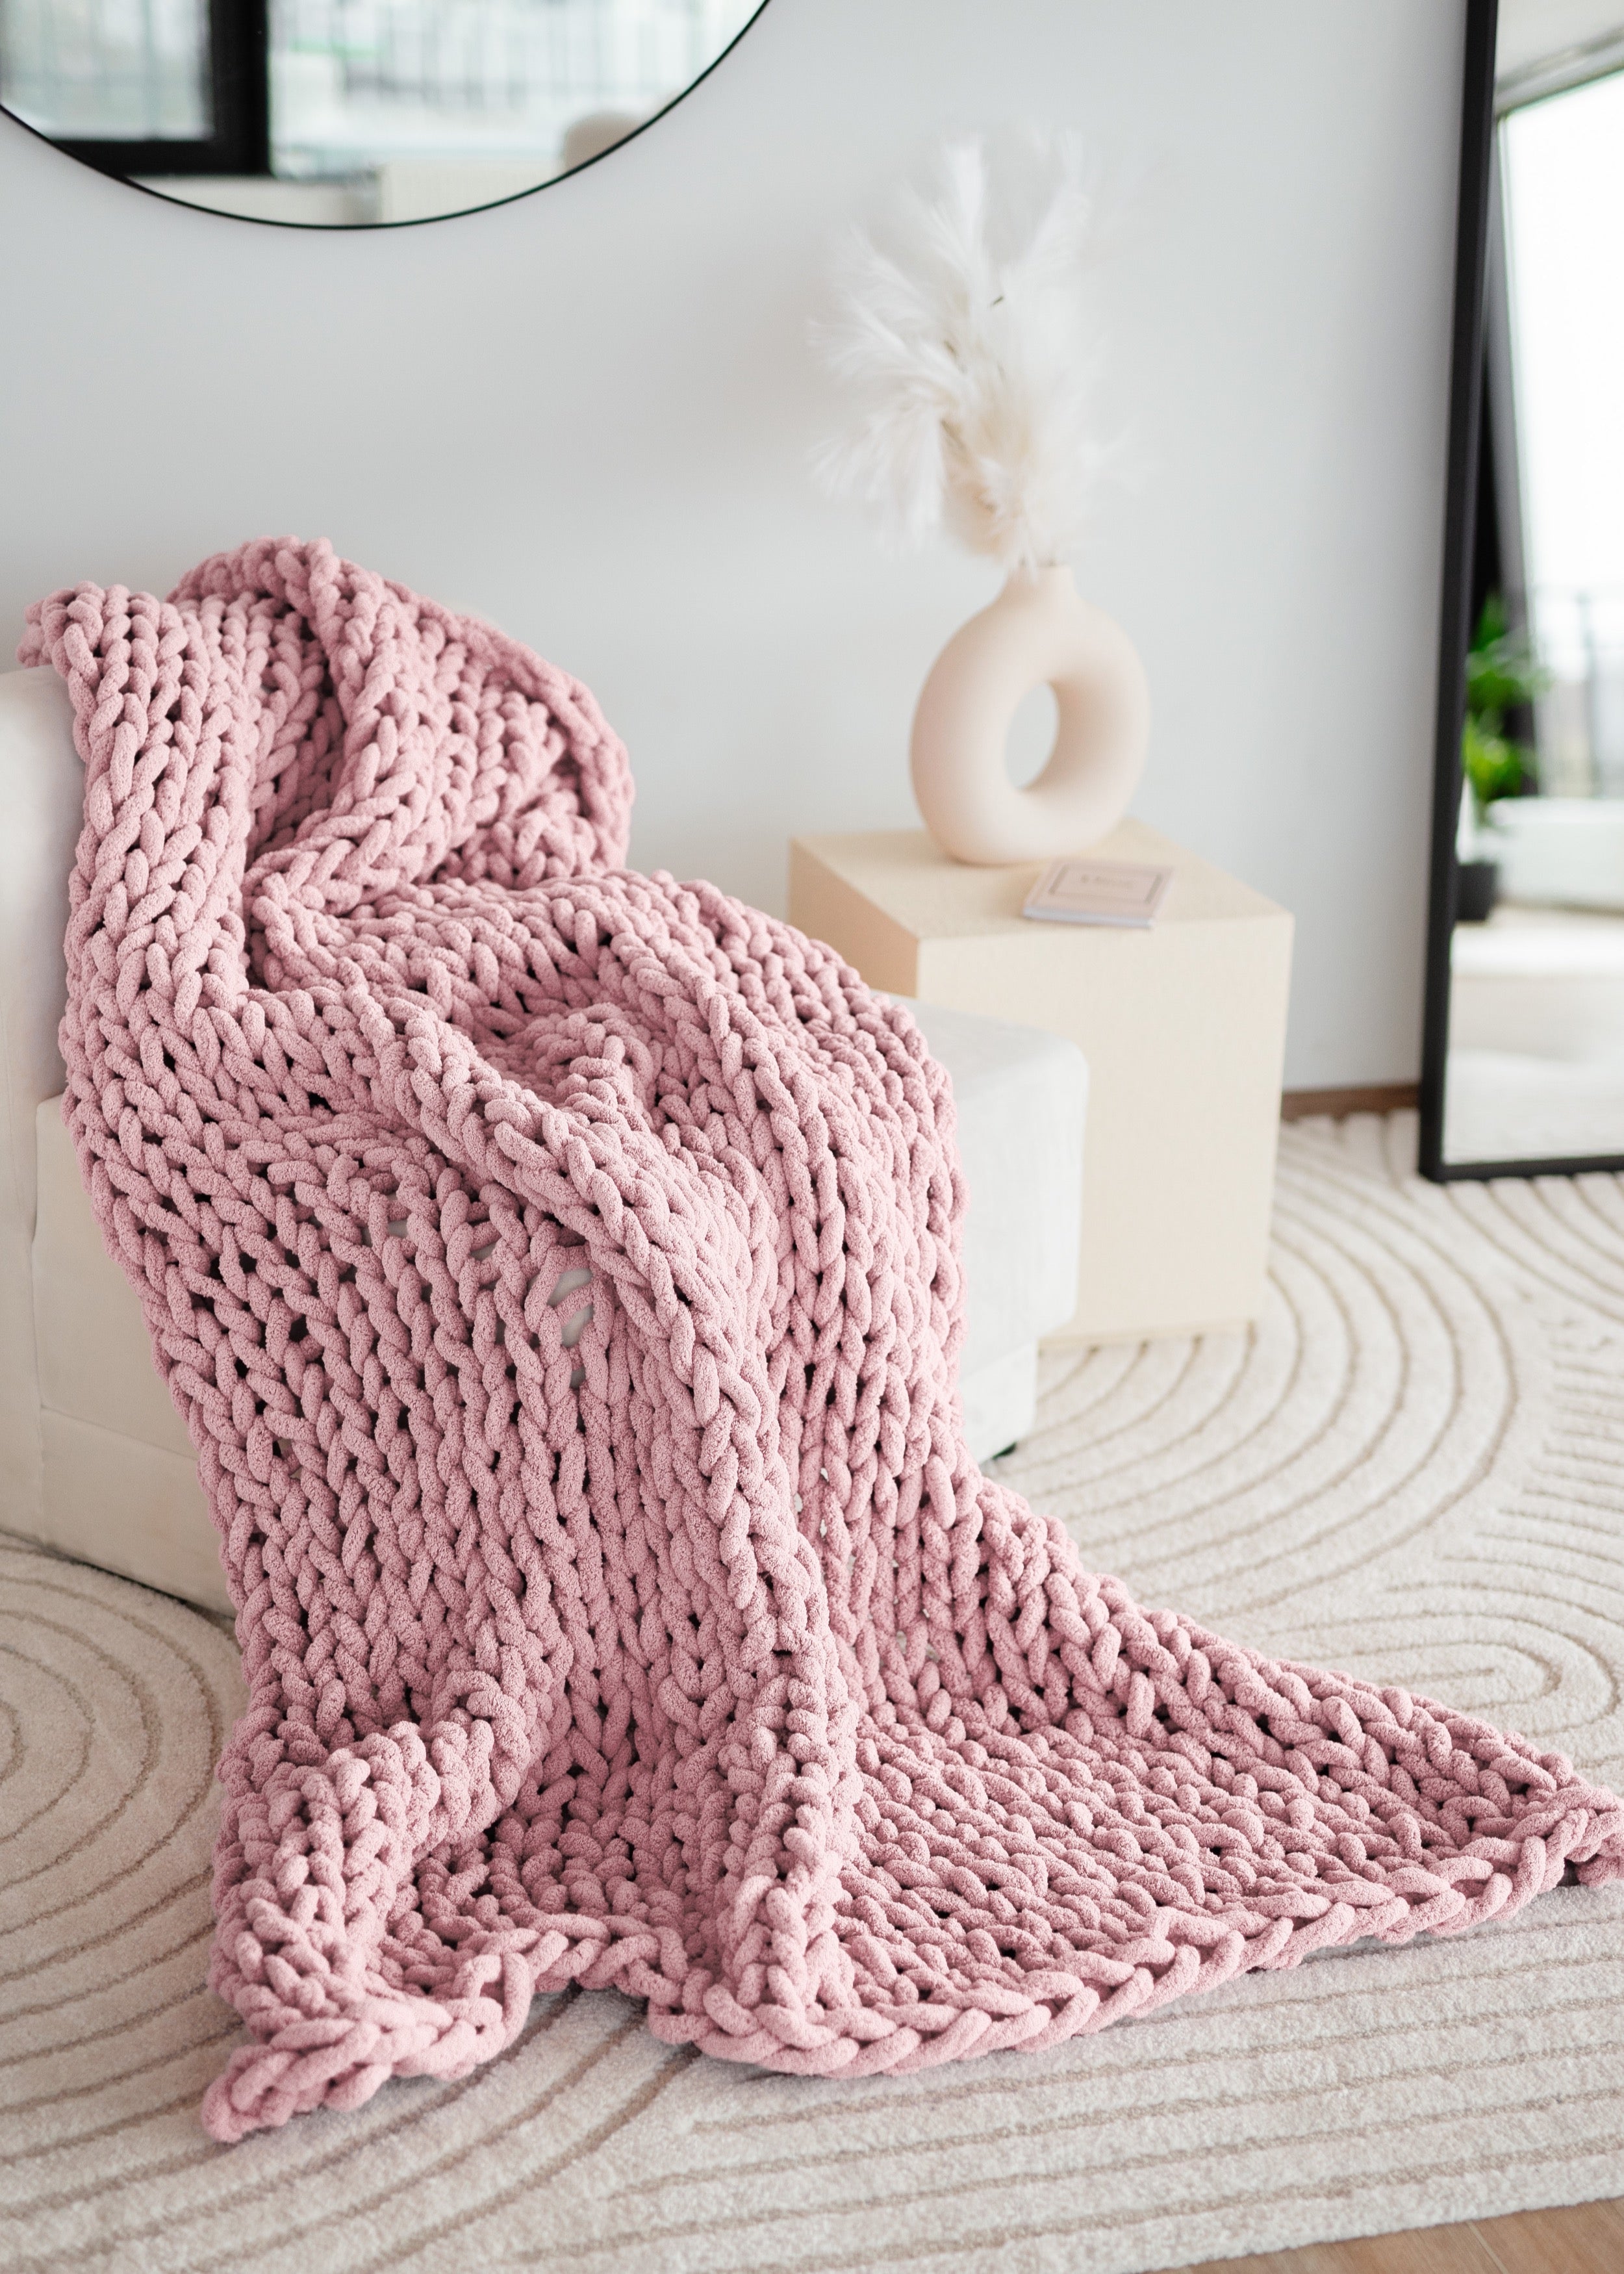 DIY Knit Kit for a blanket 40x60. Merino Wool & Giant Knitting